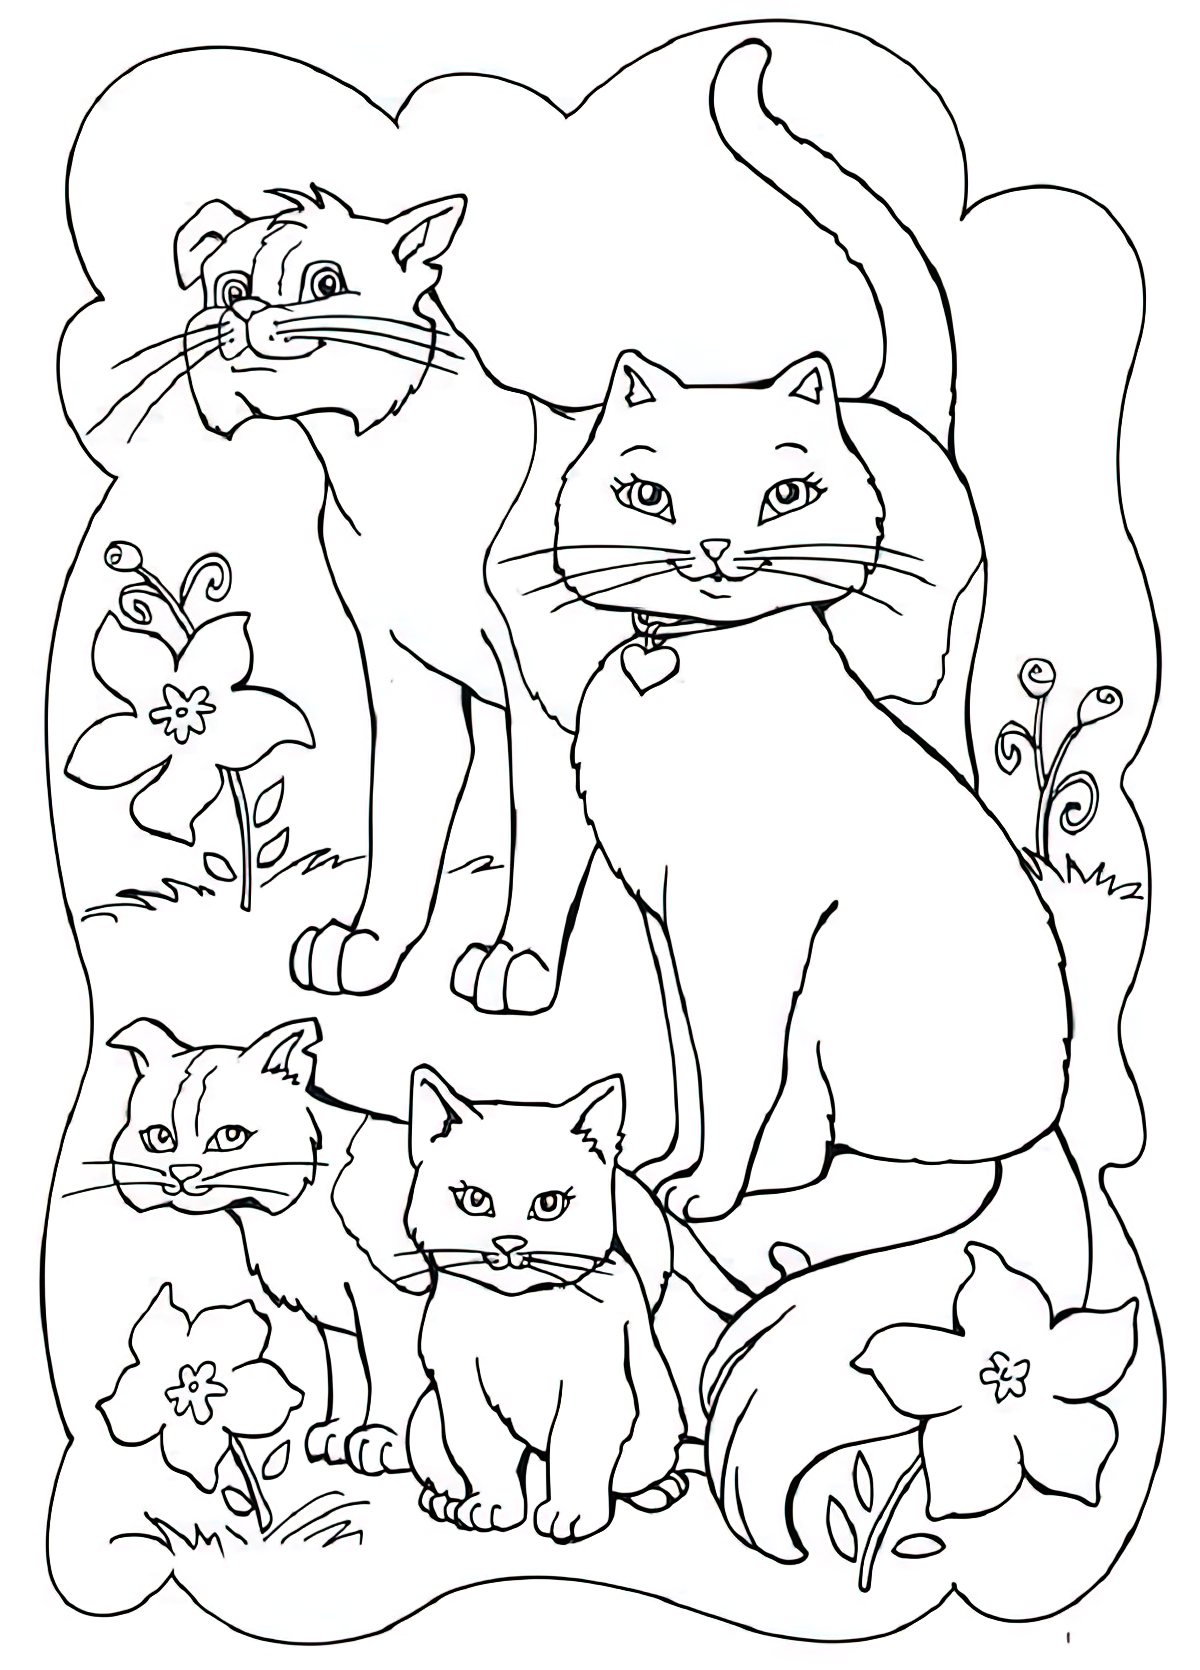 דף צביעה משפחת החתולים